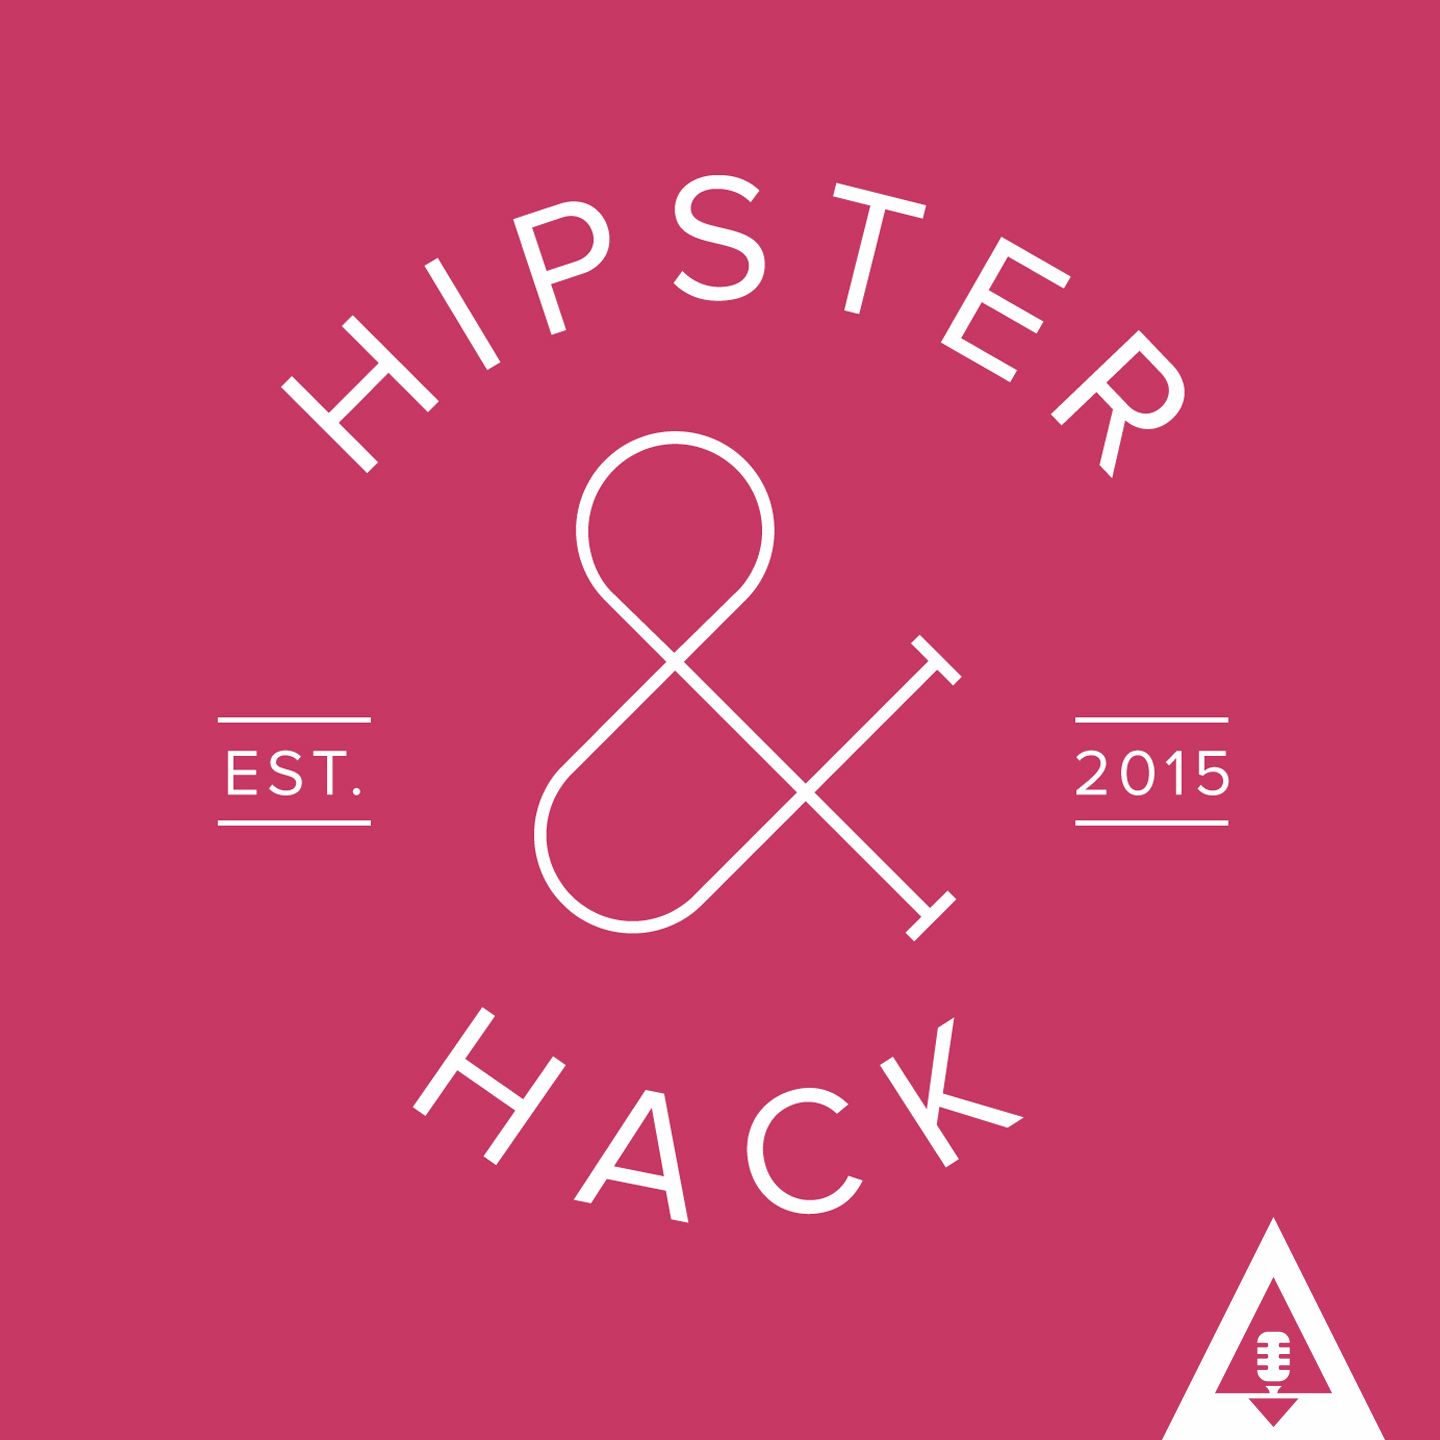 Hipster & Hack